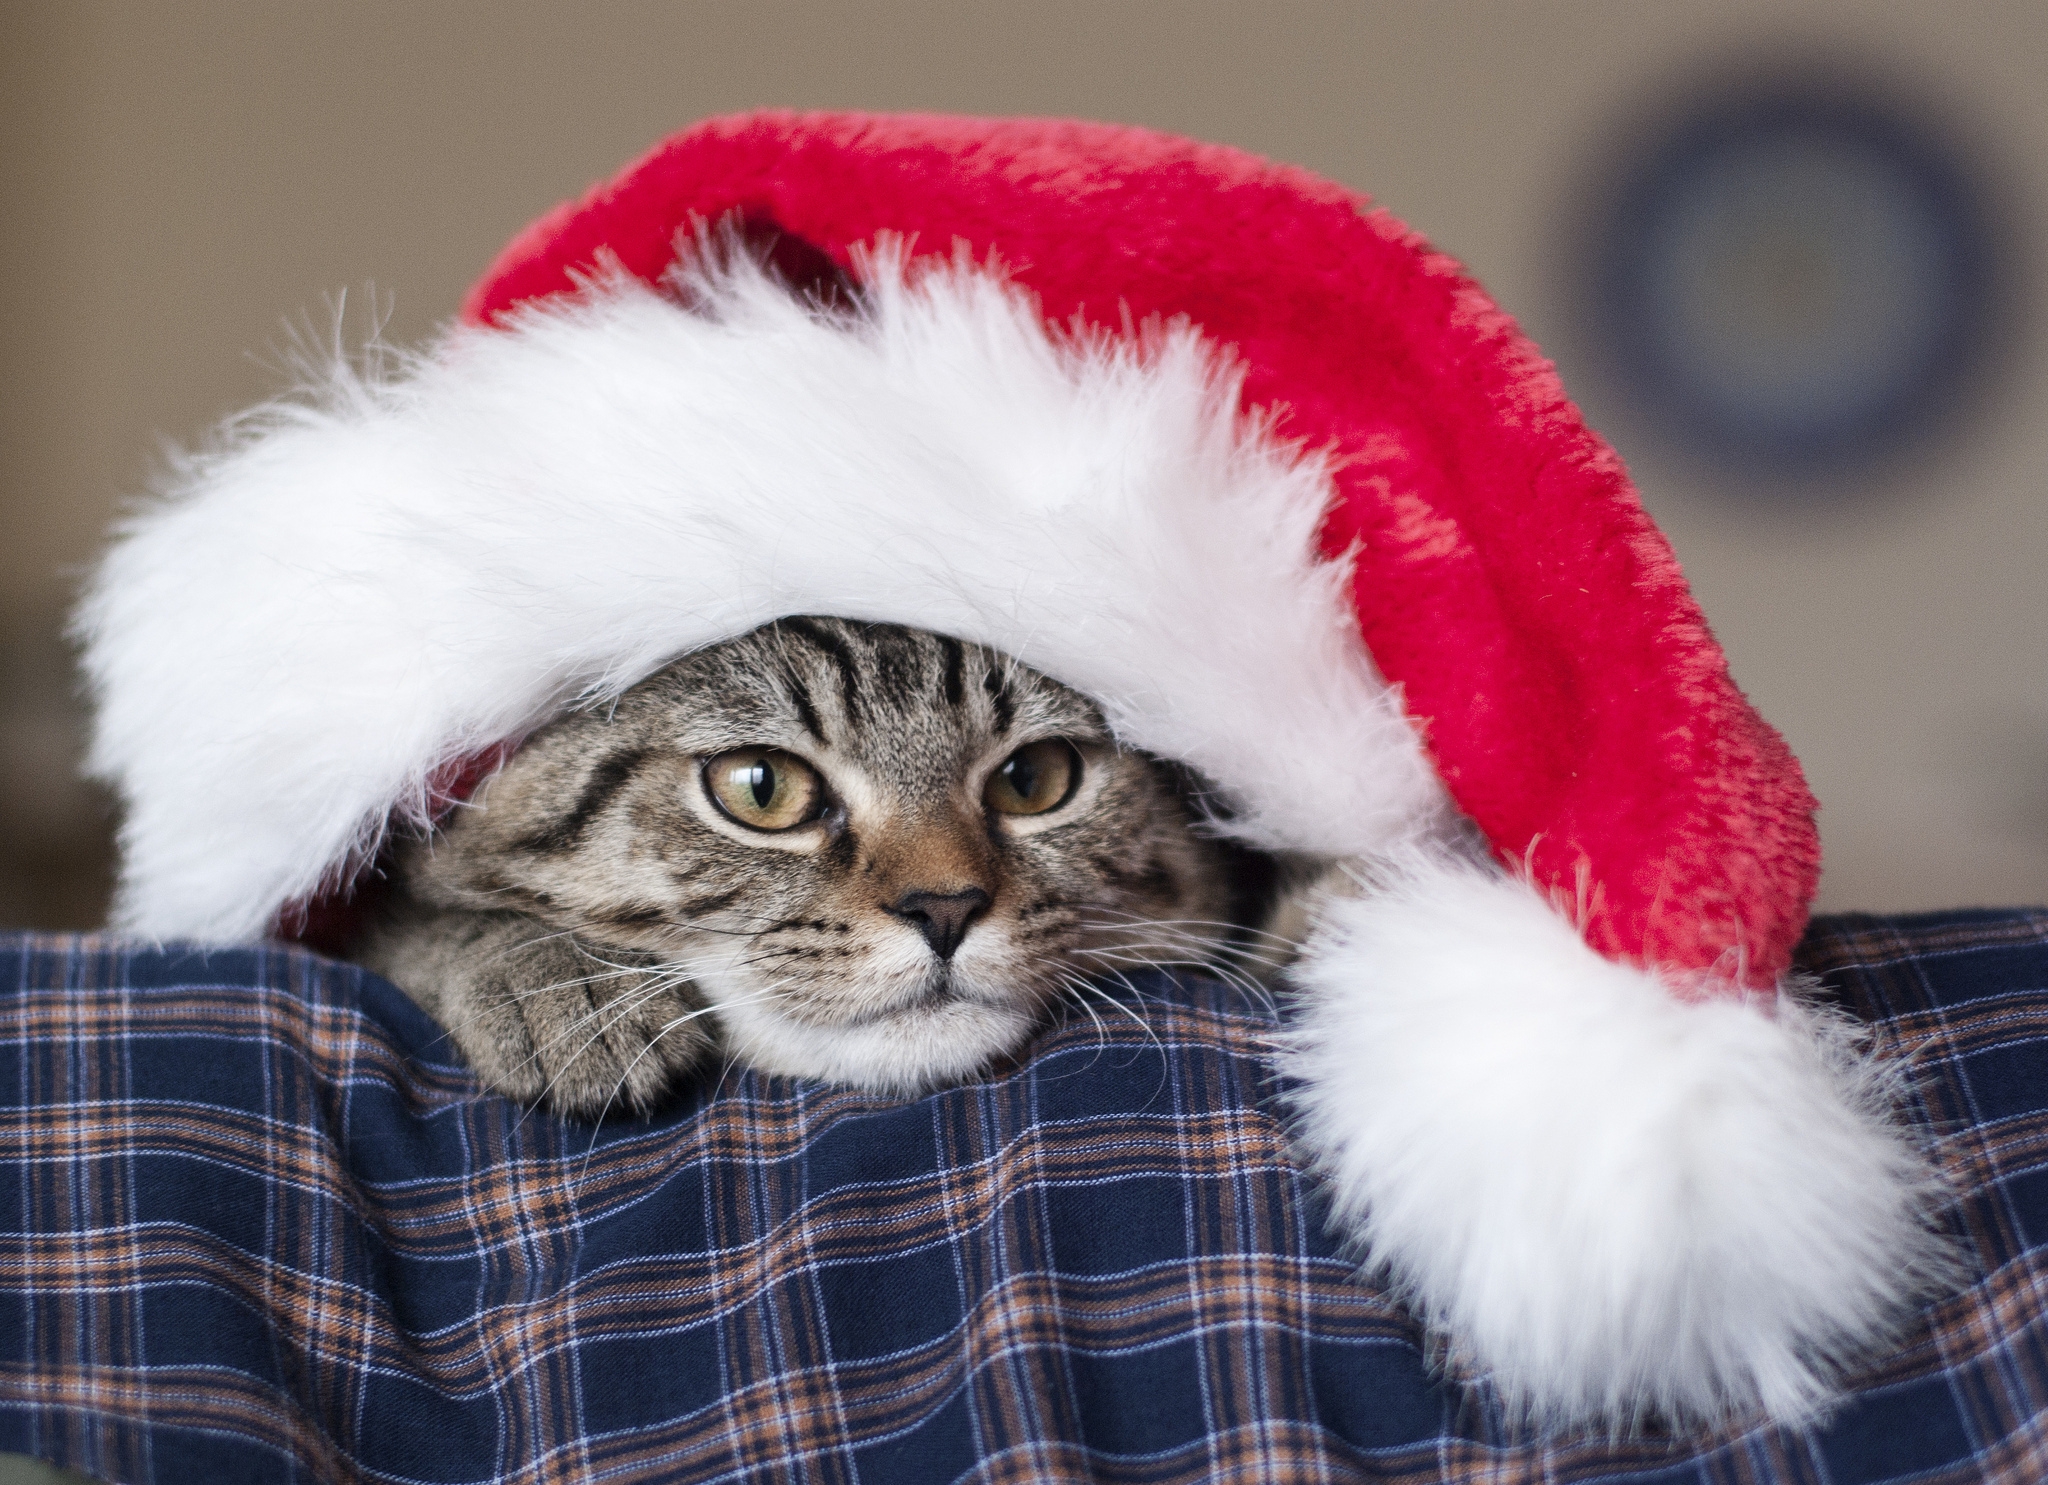 戴圣诞帽的小猫